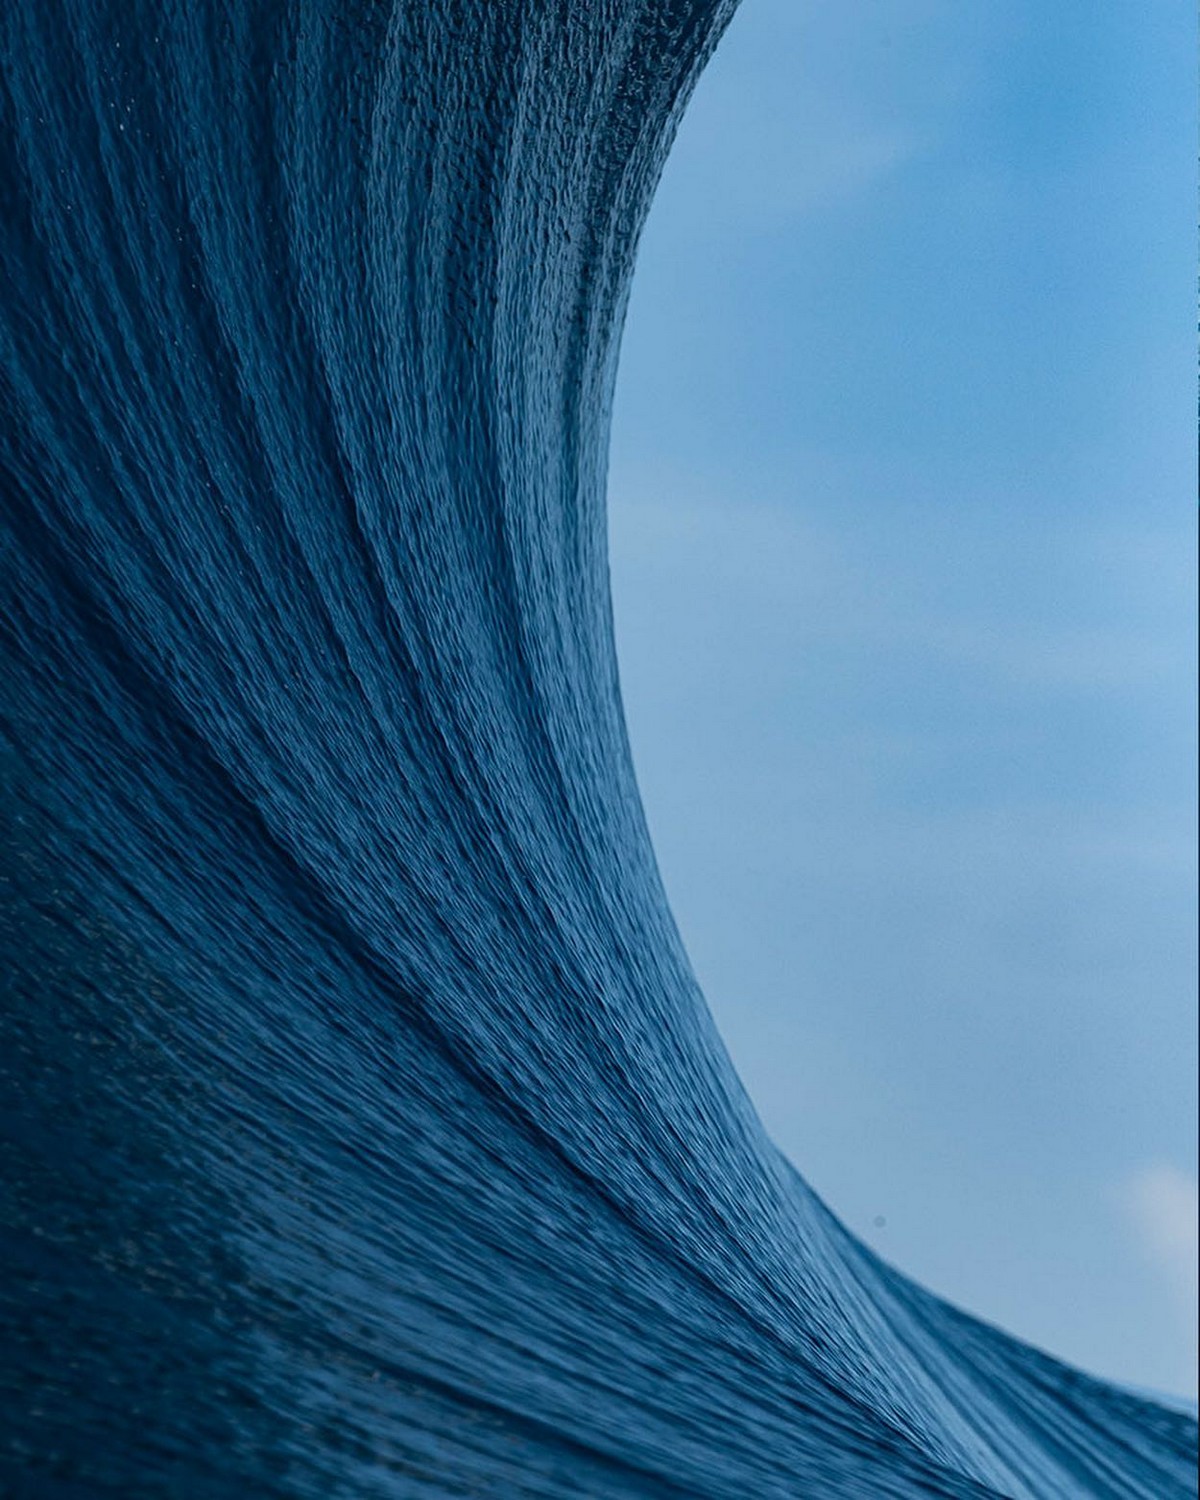 Впечатляющие морские снимки от Бена Туара